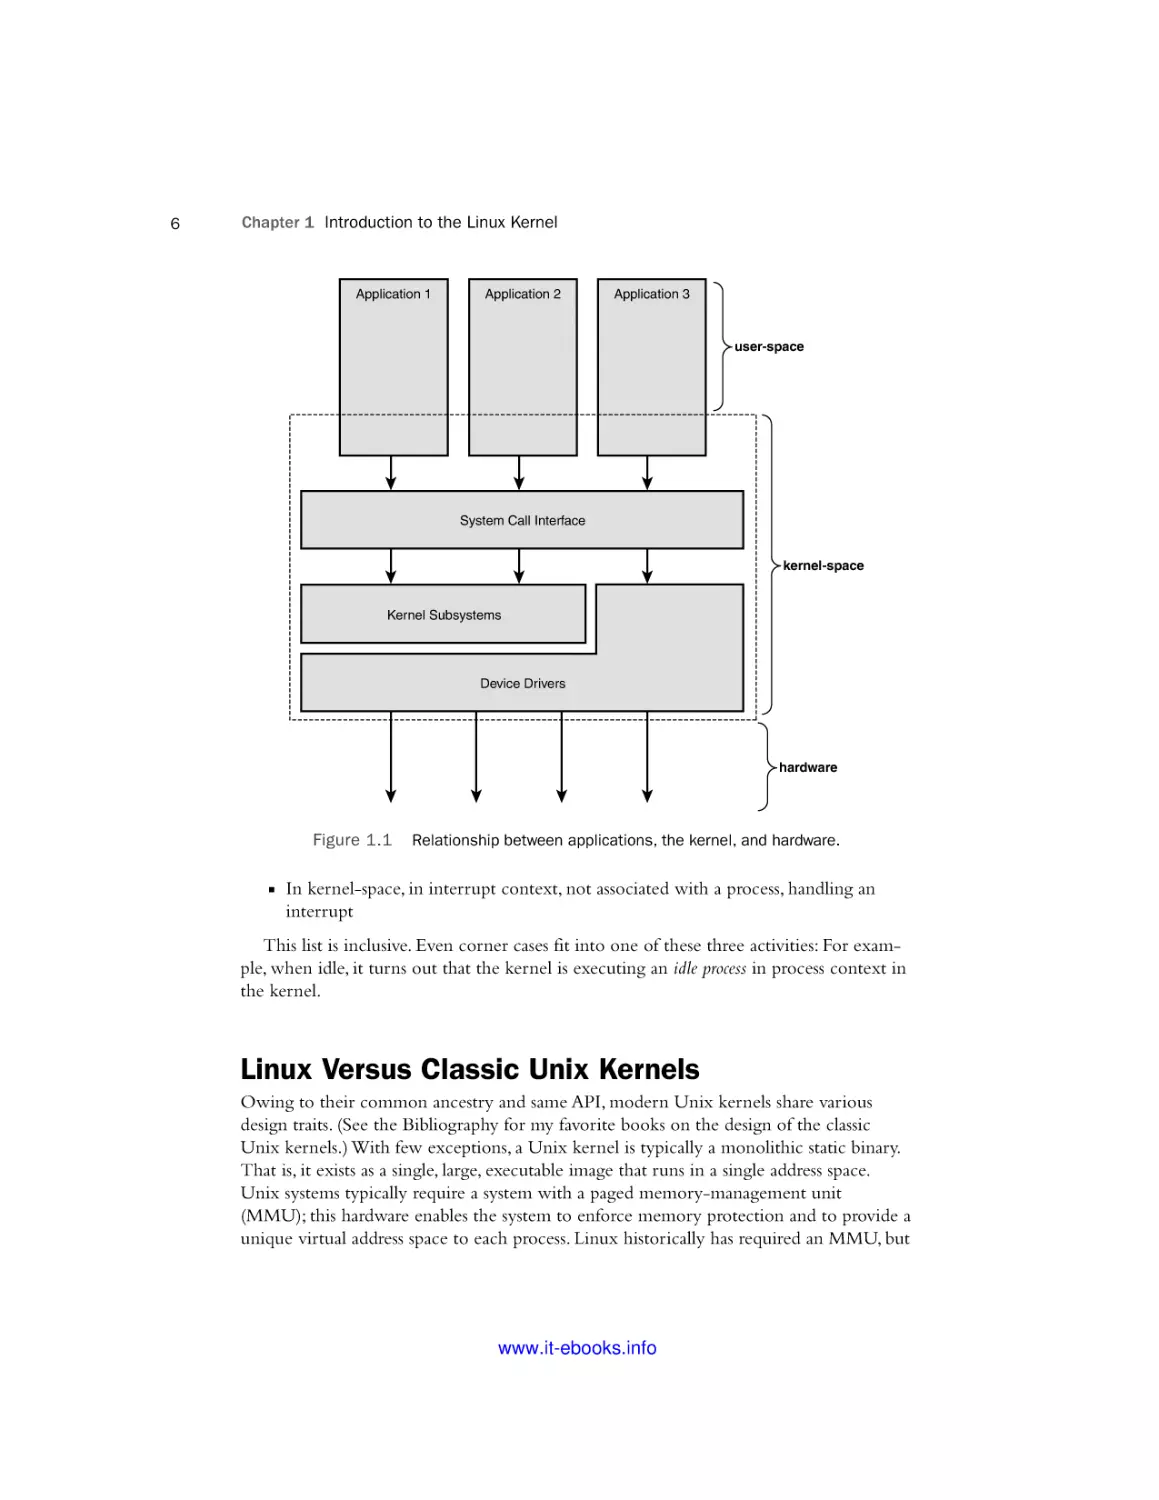 Linux Versus Classic Unix Kernels